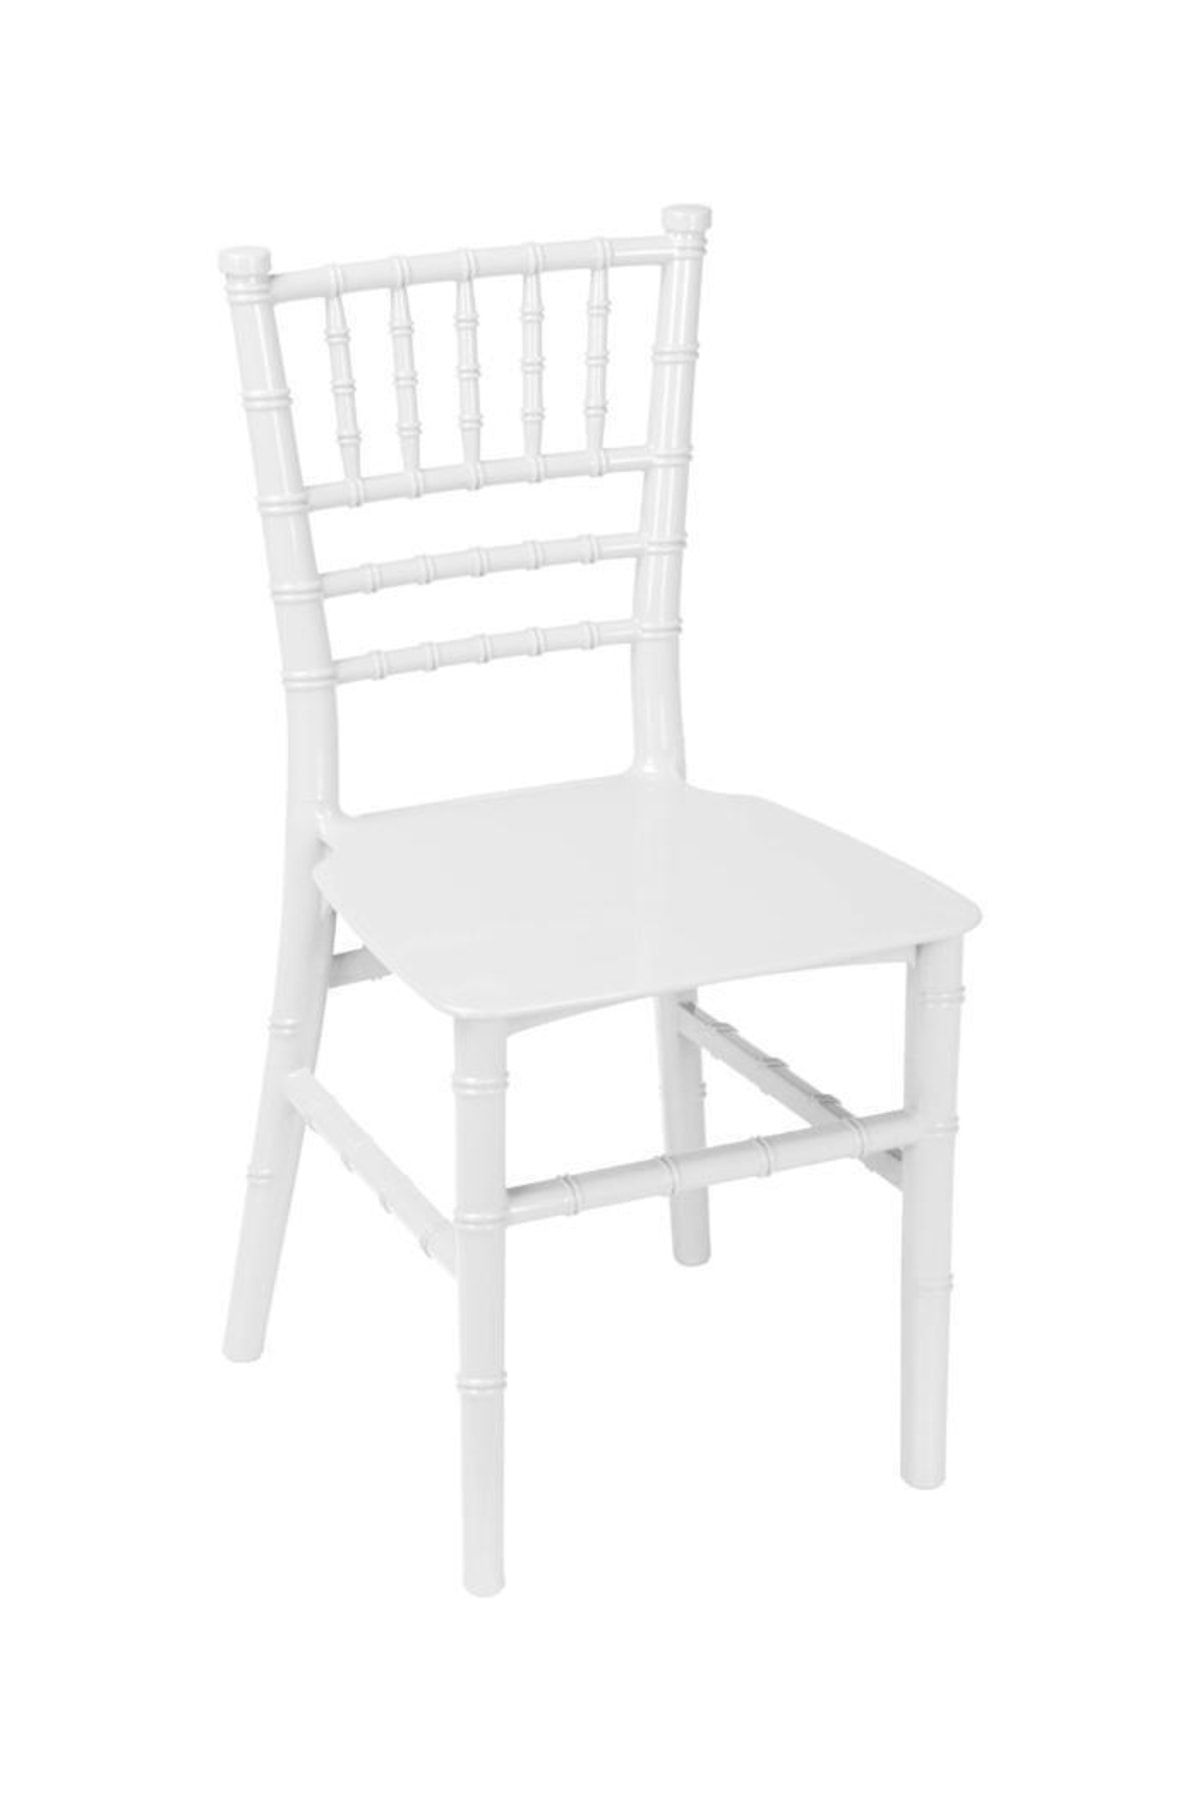 Sağlam Plastik Mandella Trend Çocuk Sandalyesi Beyaz